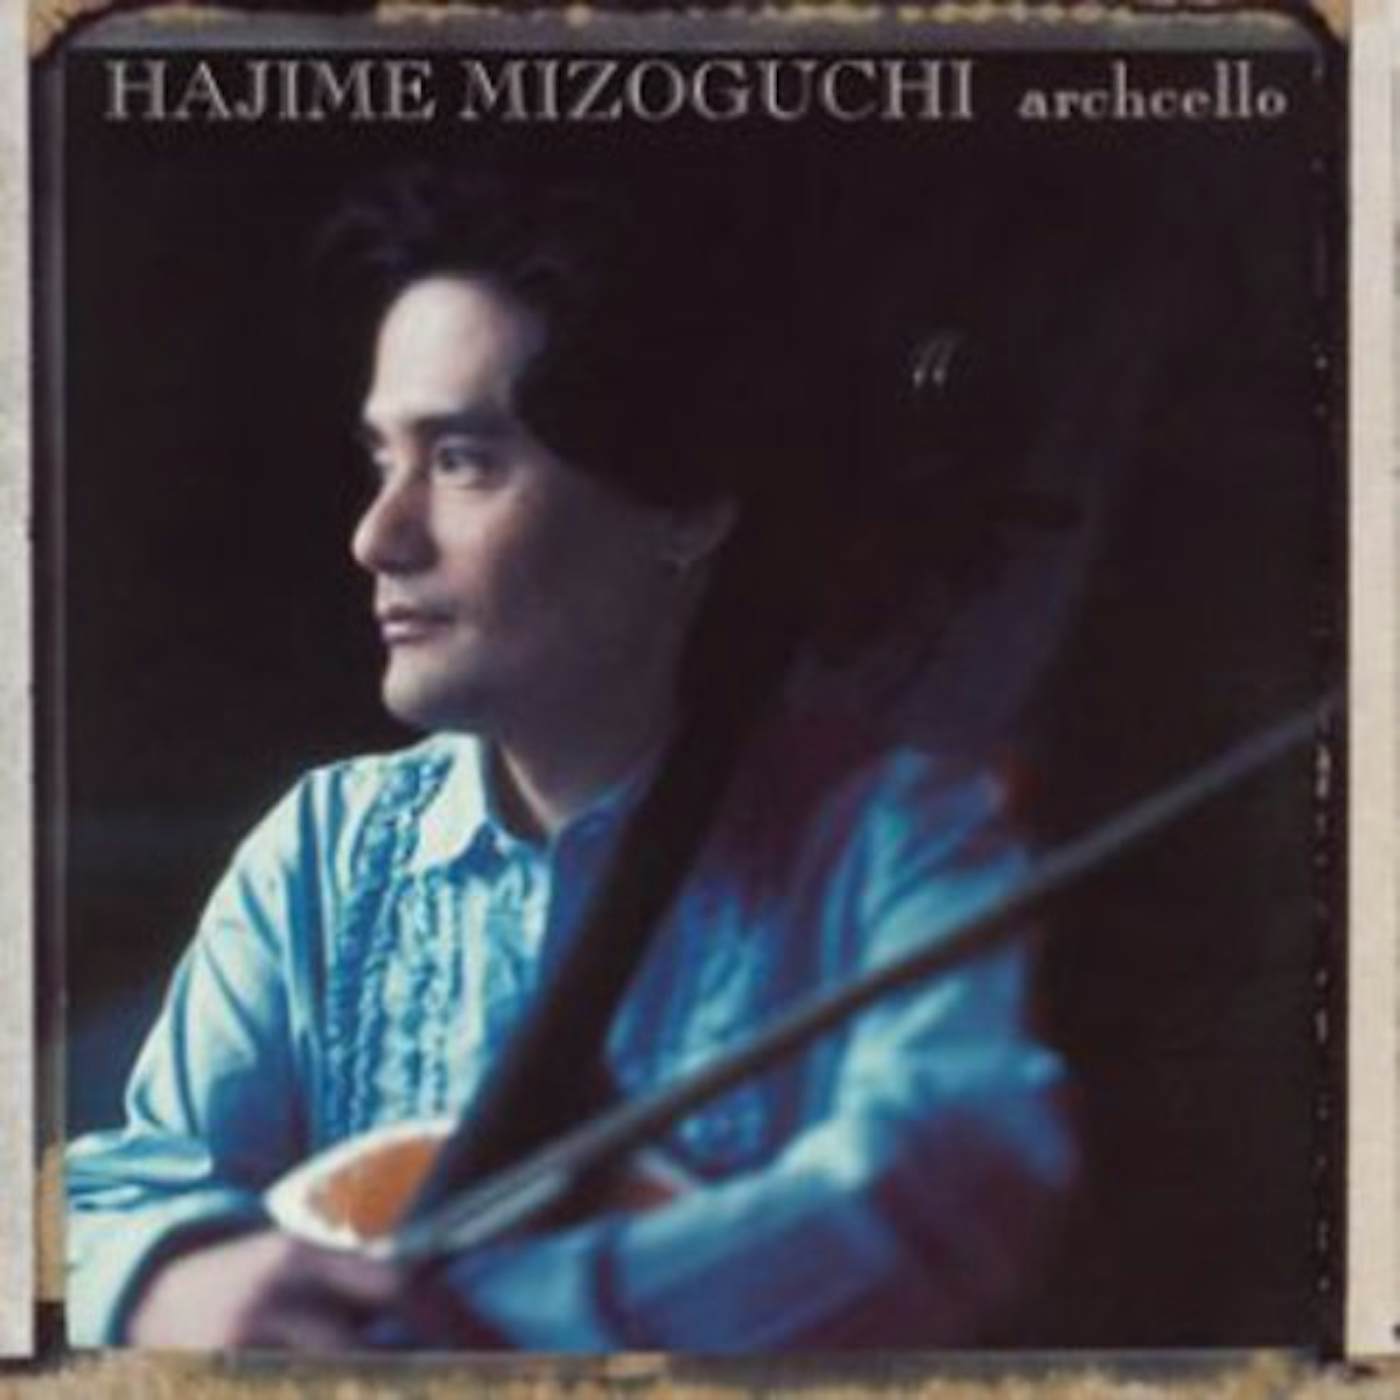 Hajime Mizoguchi ARCHCELLO CD